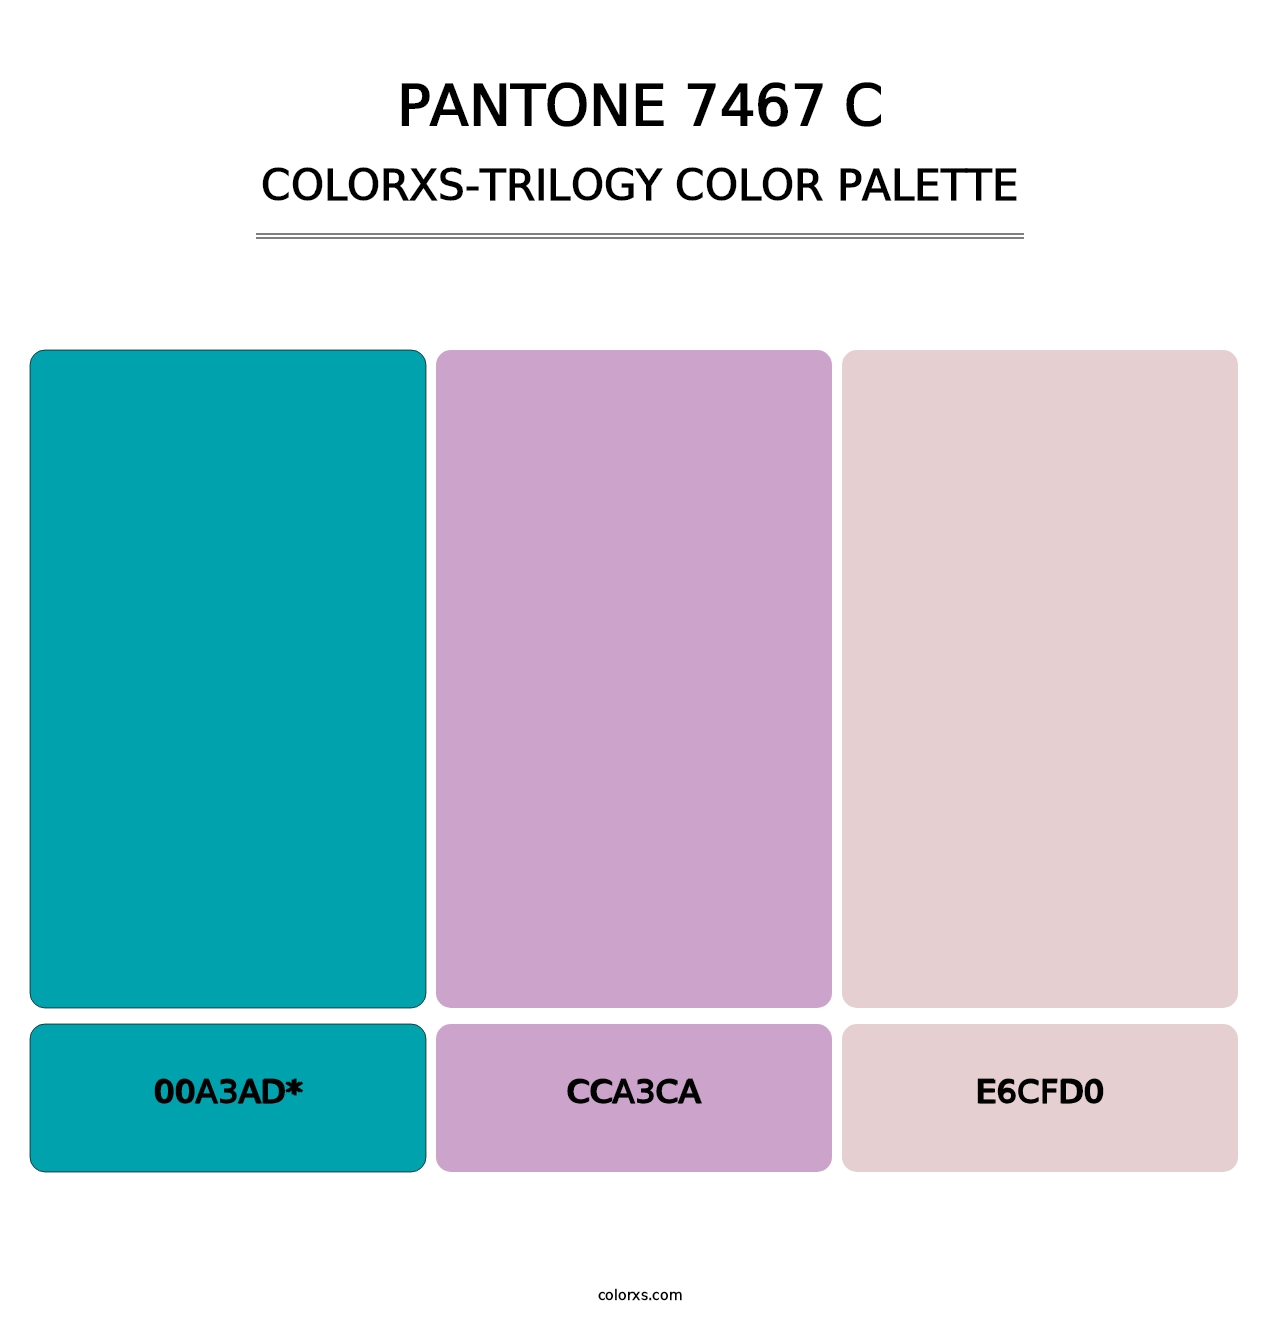 PANTONE 7467 C - Colorxs Trilogy Palette